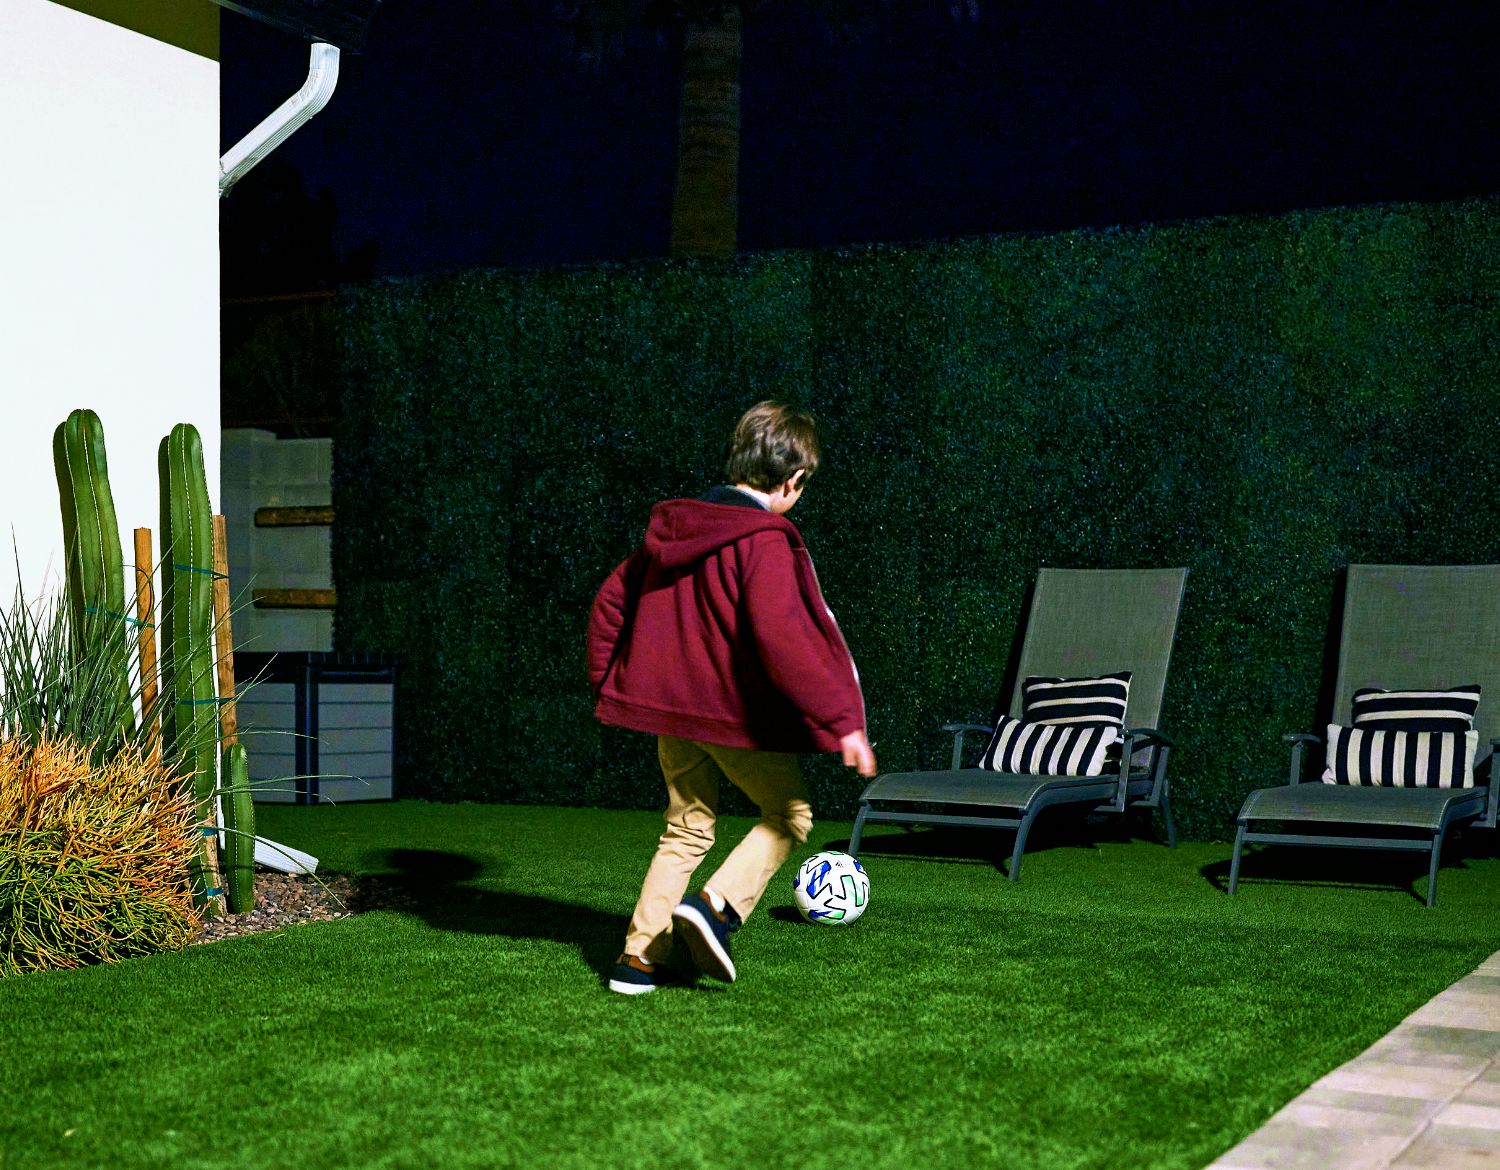 Un'immagine mostra un ragazzo che gioca a calcio in giardino di notte, ripreso da una telecamera di sicurezza Arlo Ultra 2